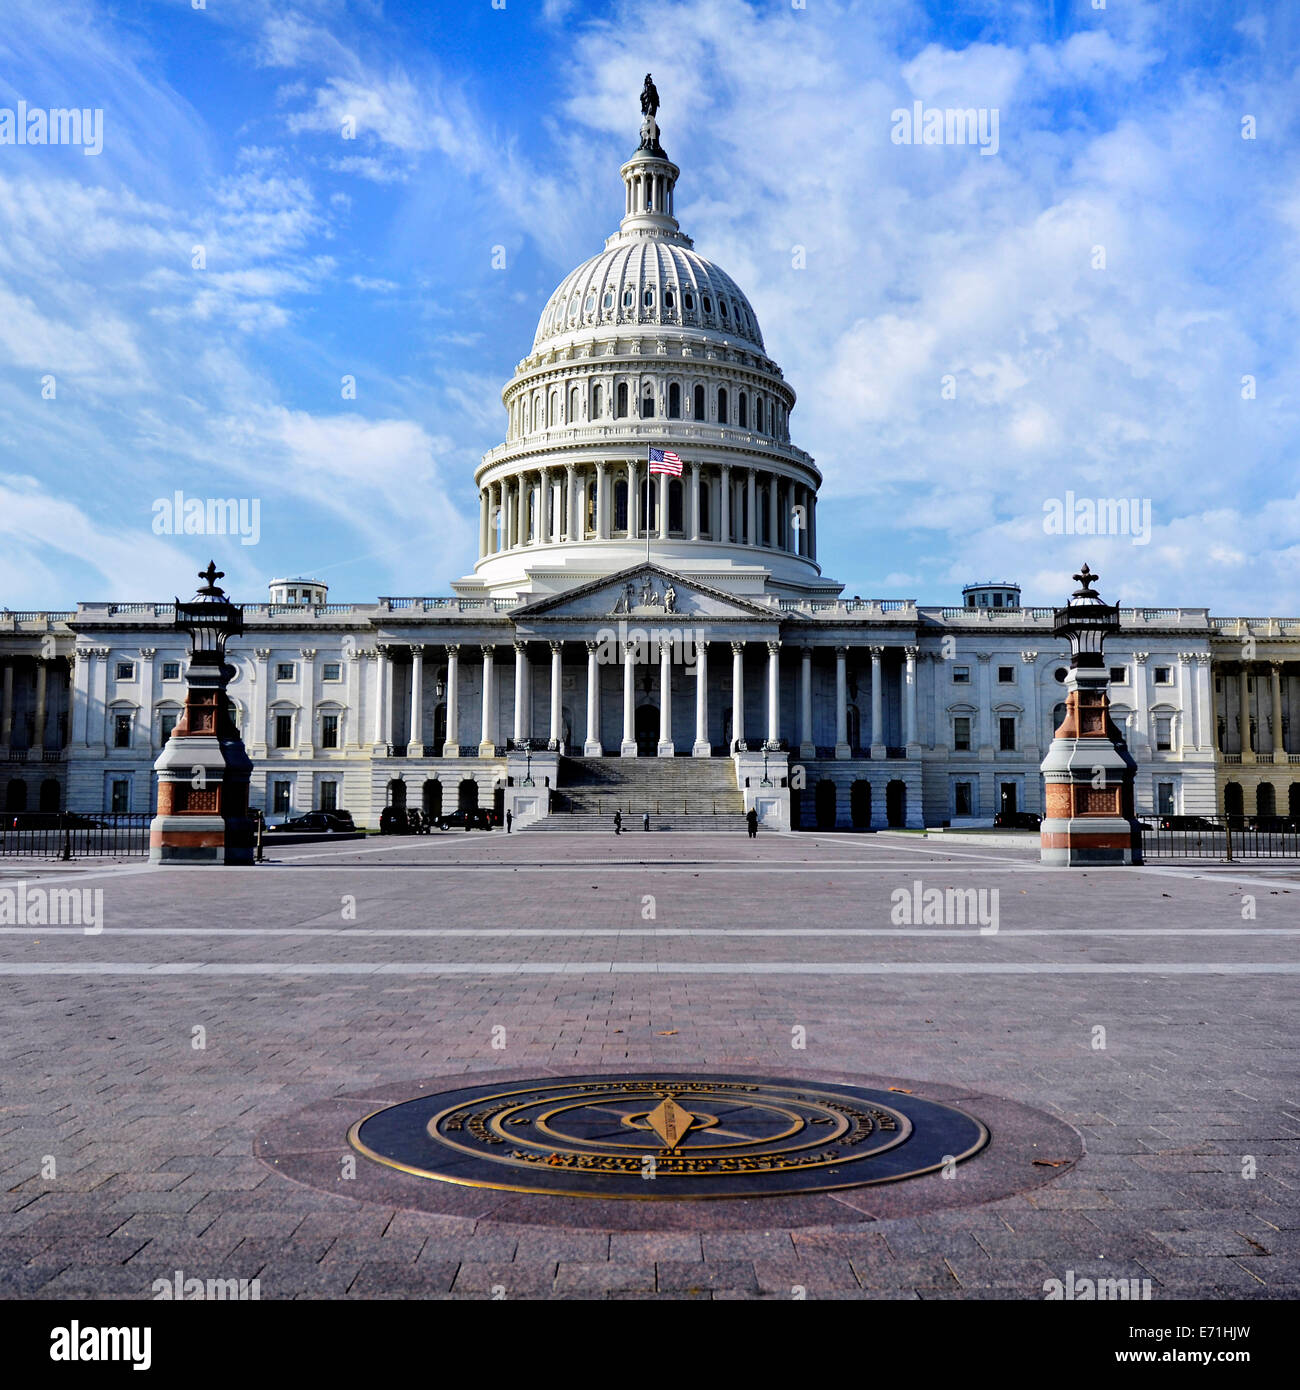 El edificio del Capitolio de los Estados Unidos para el congreso con bandera americana que fluye en la brisa y las columnas en el fondo Foto de stock